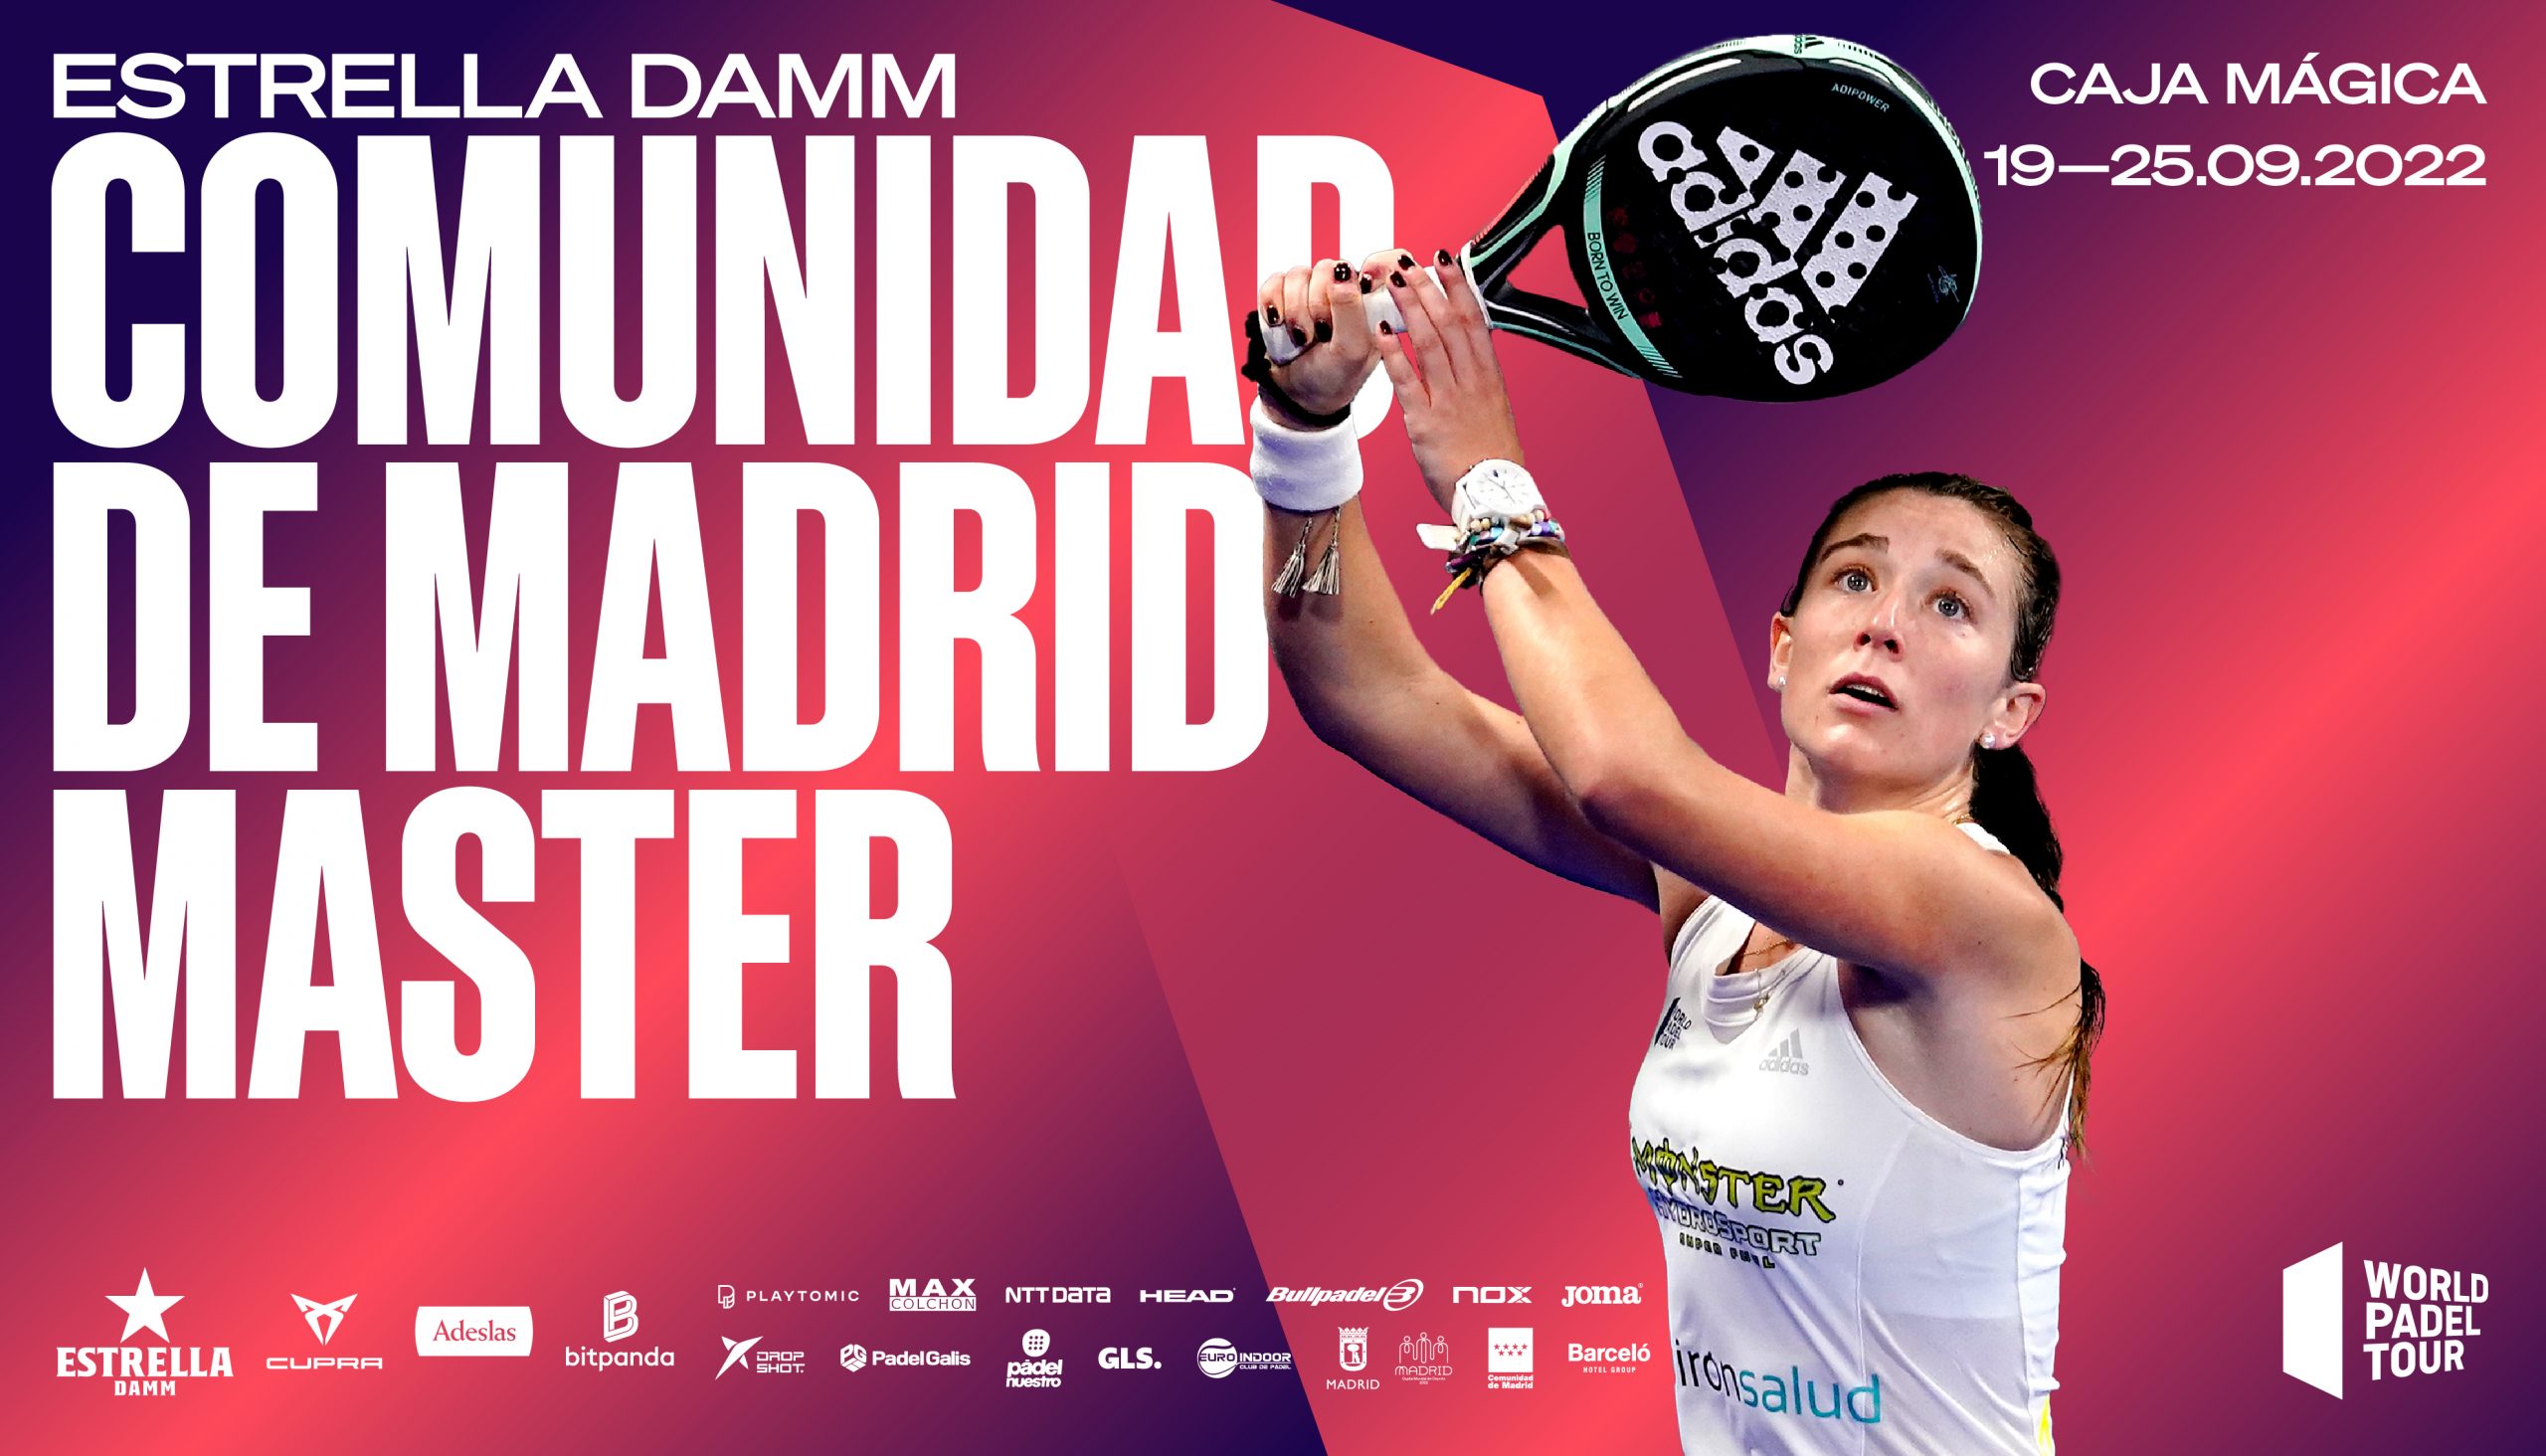 ¡Consigue ya tus entradas para el Estrella Damm Comunidad de Madrid Master 2022!